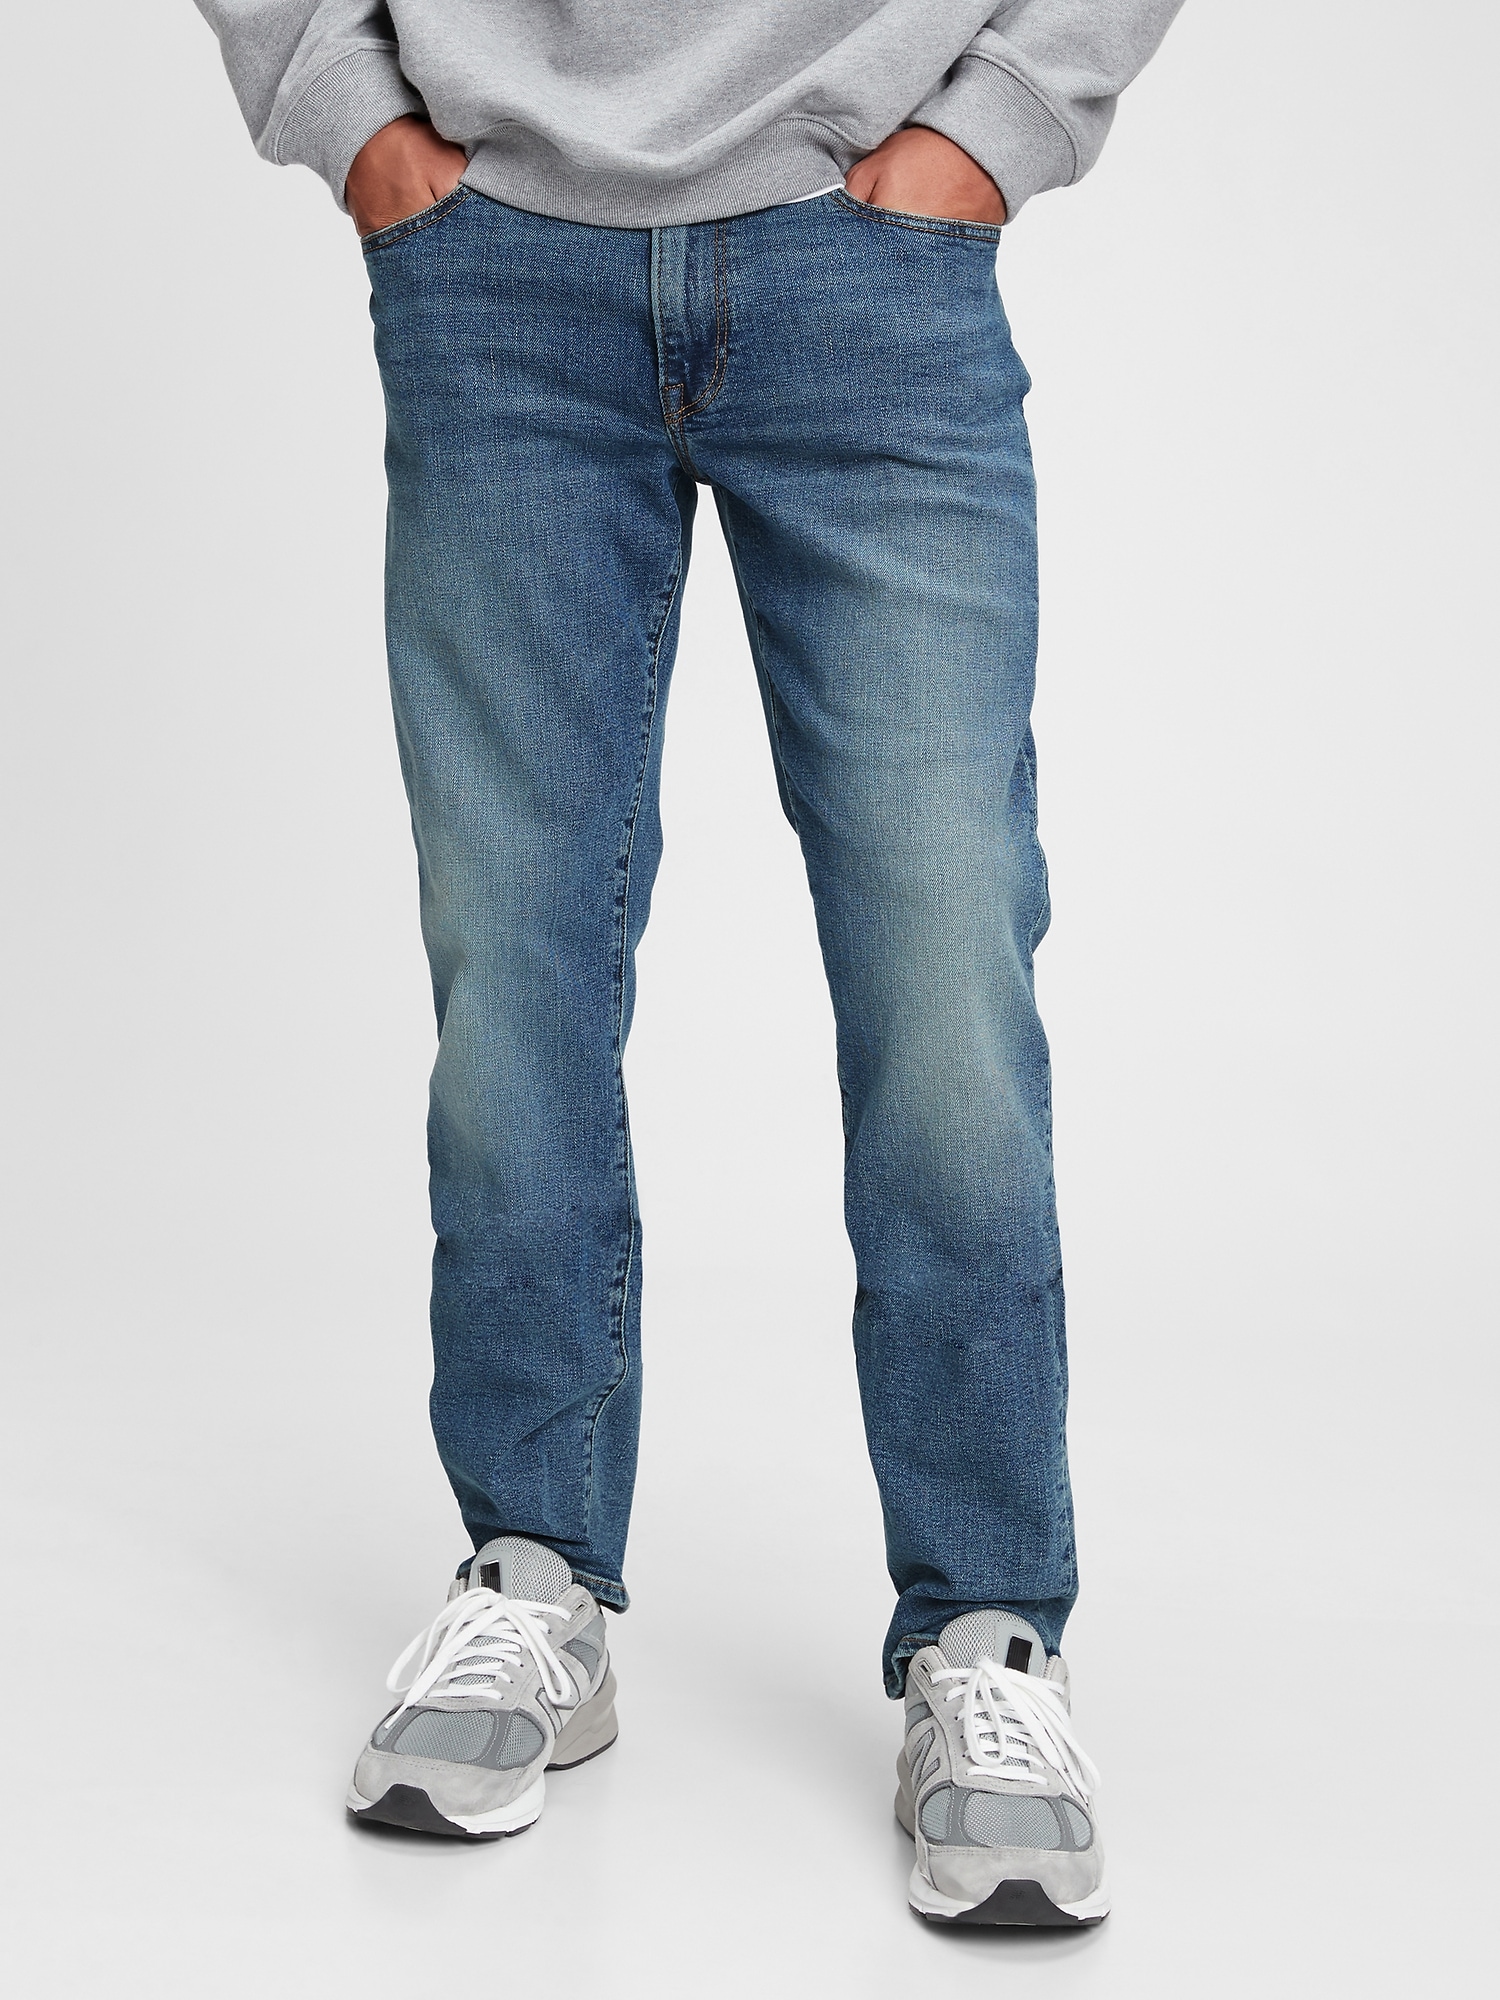 Gap Straight Jeans in GapFlex blue. 1